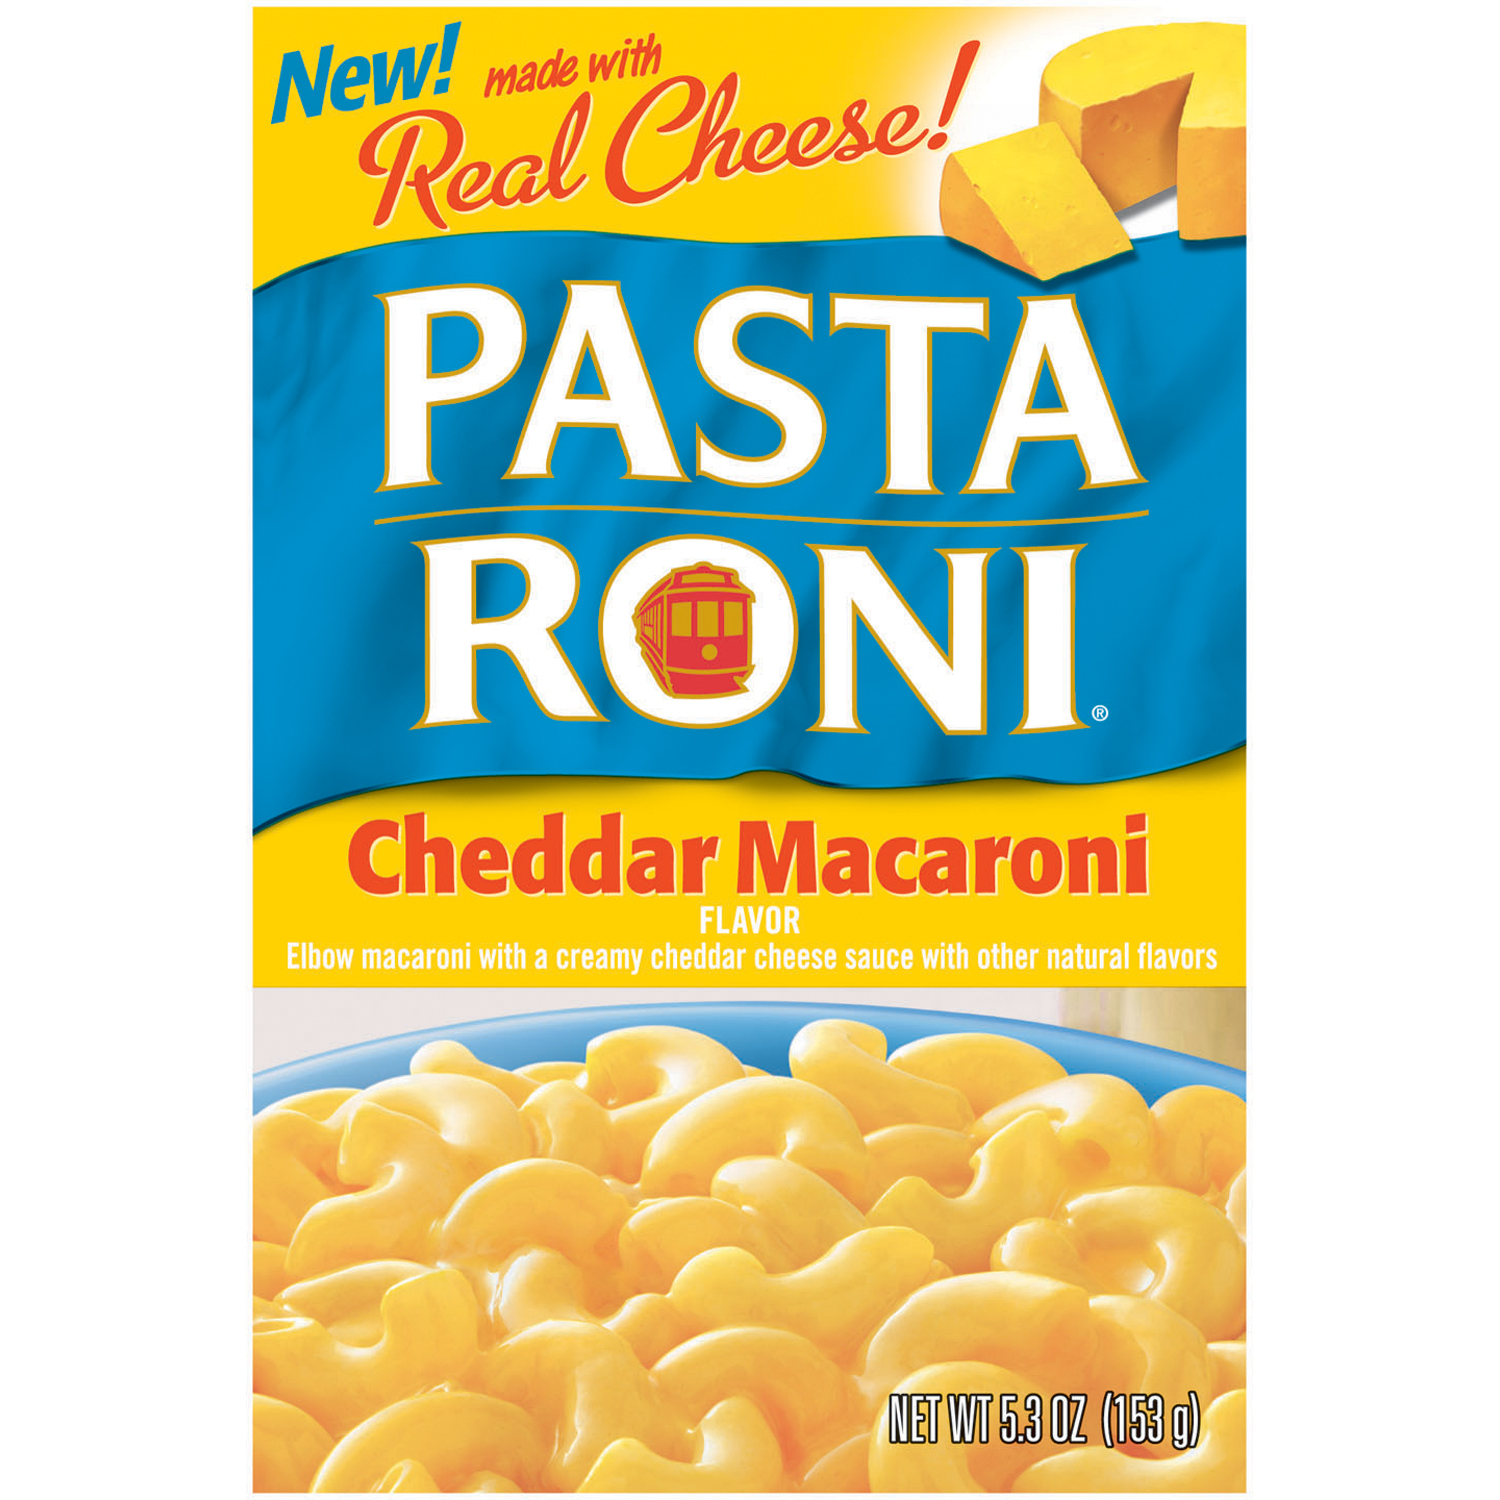 Pasta Roni Cheddar Macaroni, 5.3 oz (153 g)